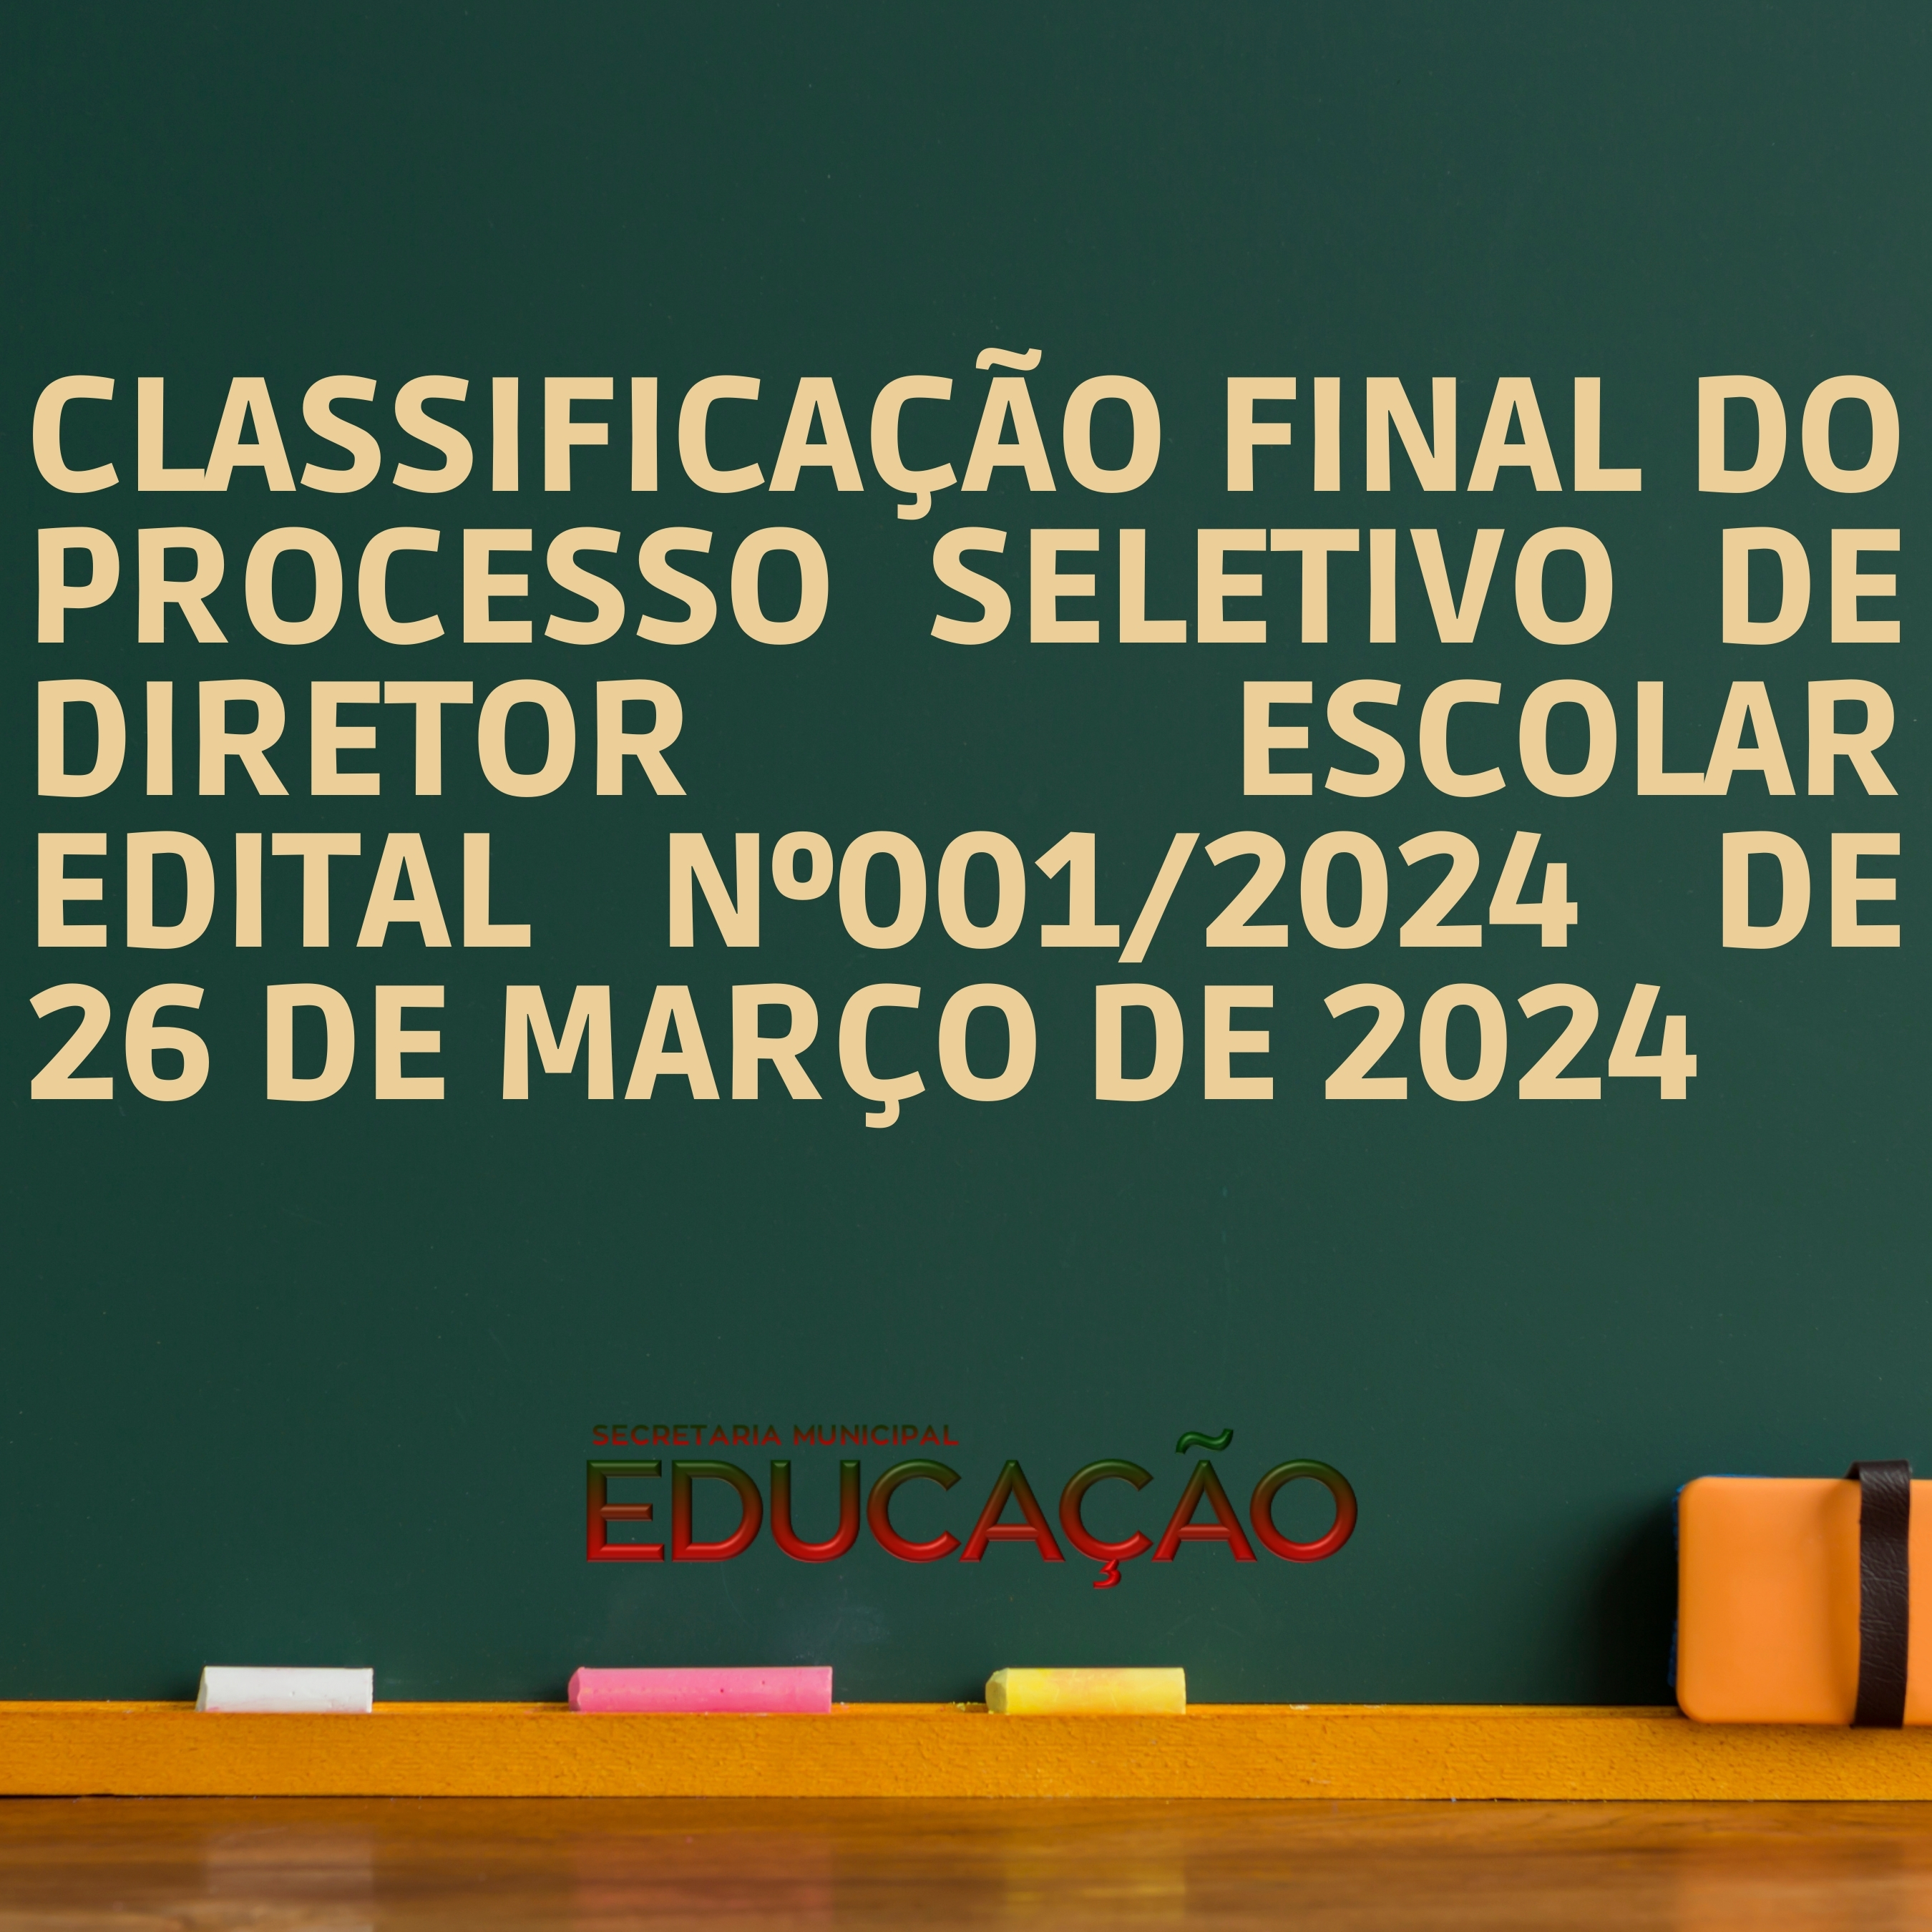 CLASSIFICAÇÃO FINAL DO PROCESSO SELETIVO DE DIRETOR ESCOLAR  EDITAL Nº001/2024 DE 26 DE MARÇO DE 2024